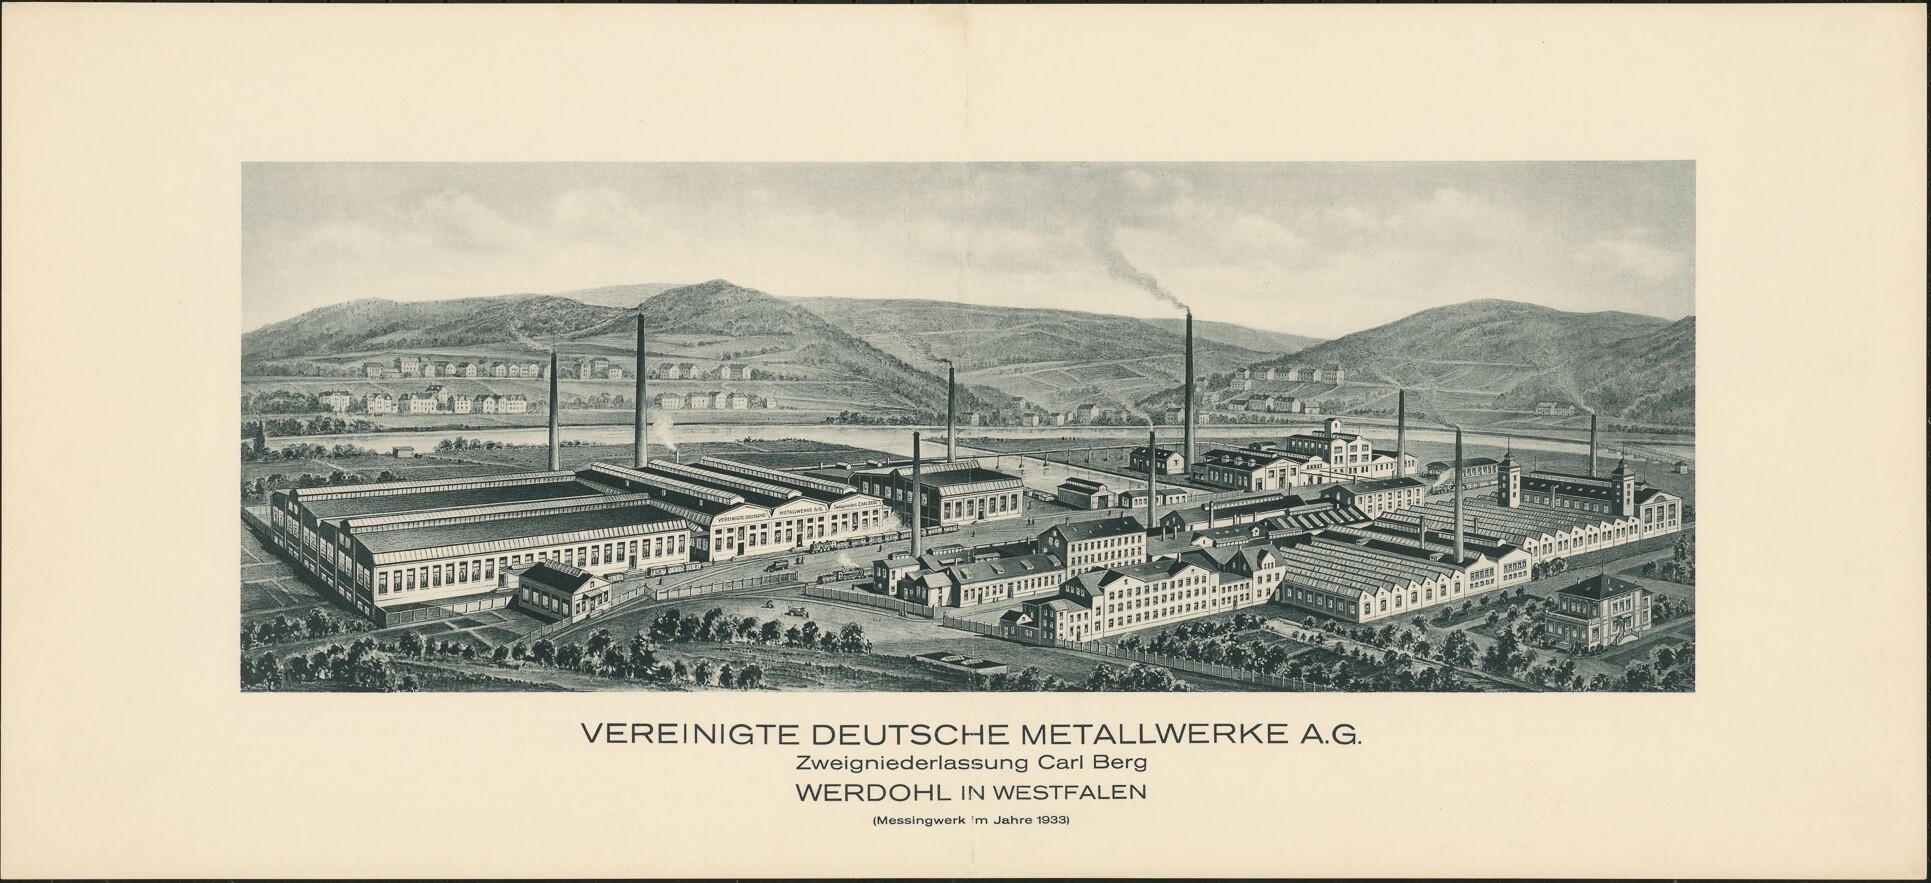 Druck mit Panoramaansicht der "Vereinigte Deutsche Metallwerke A.G." (Museen Burg Altena CC BY-NC-SA)